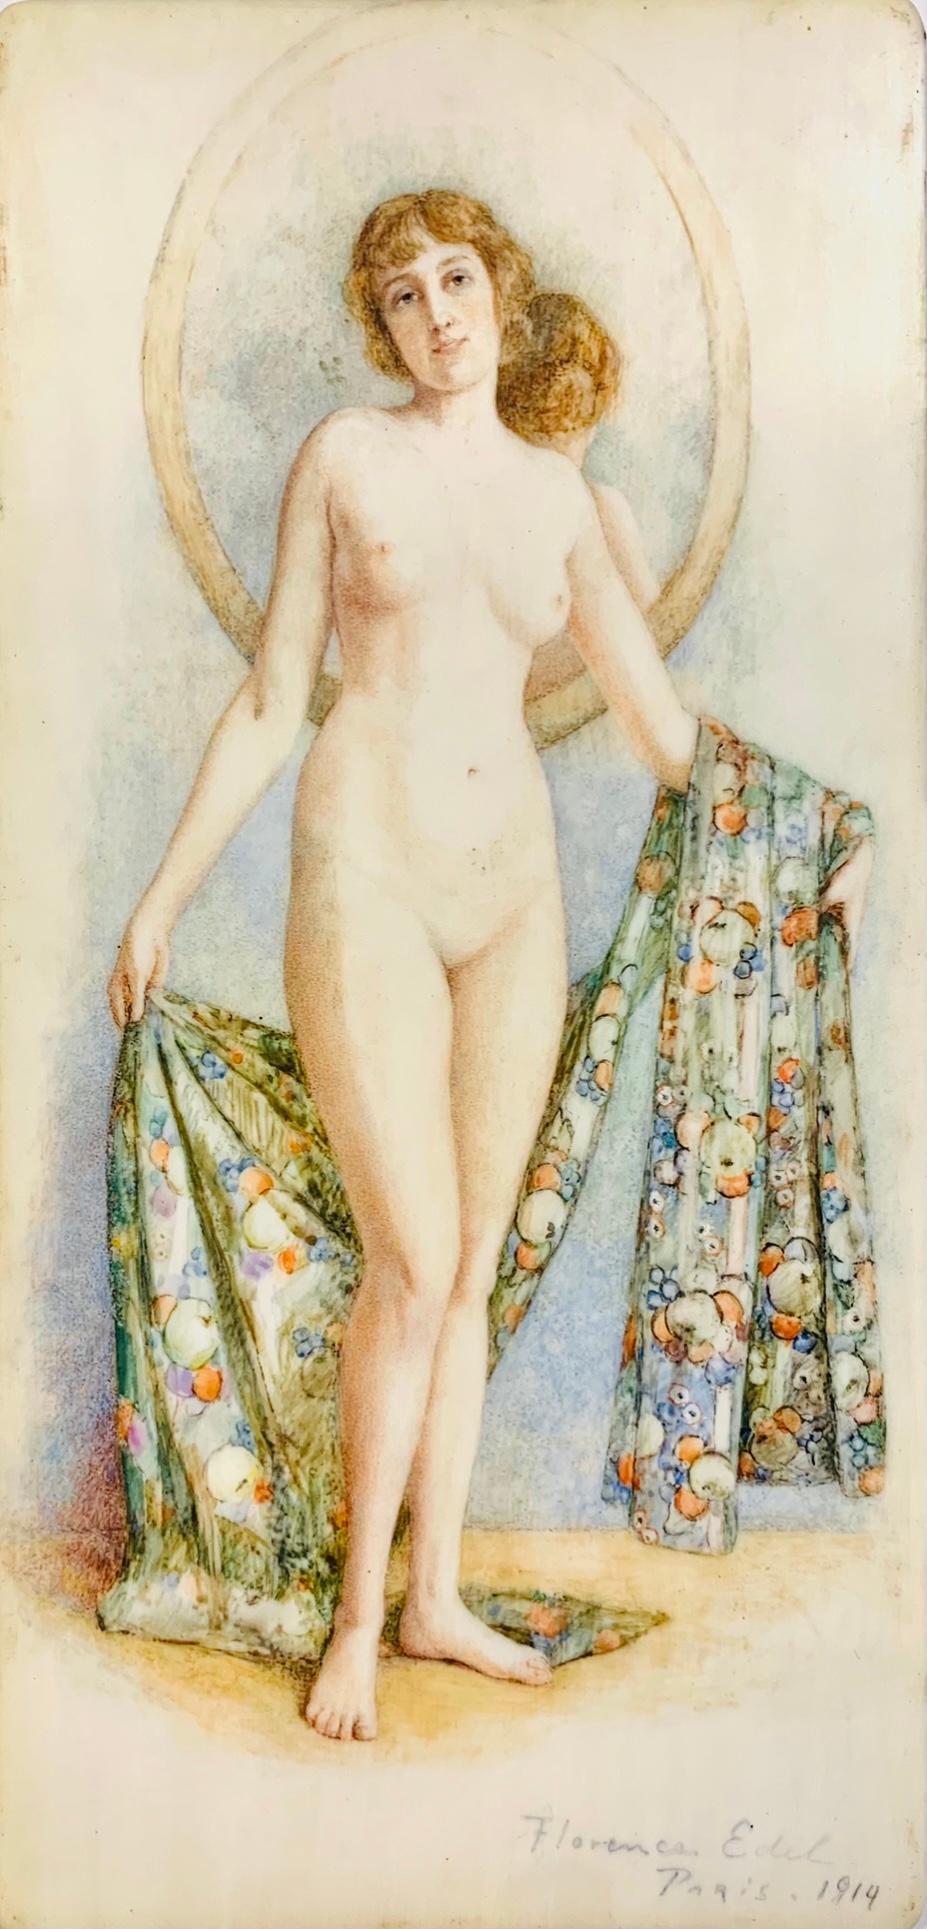 Nude Portrait with Mirror, Original Art Nouveau Painting 1914